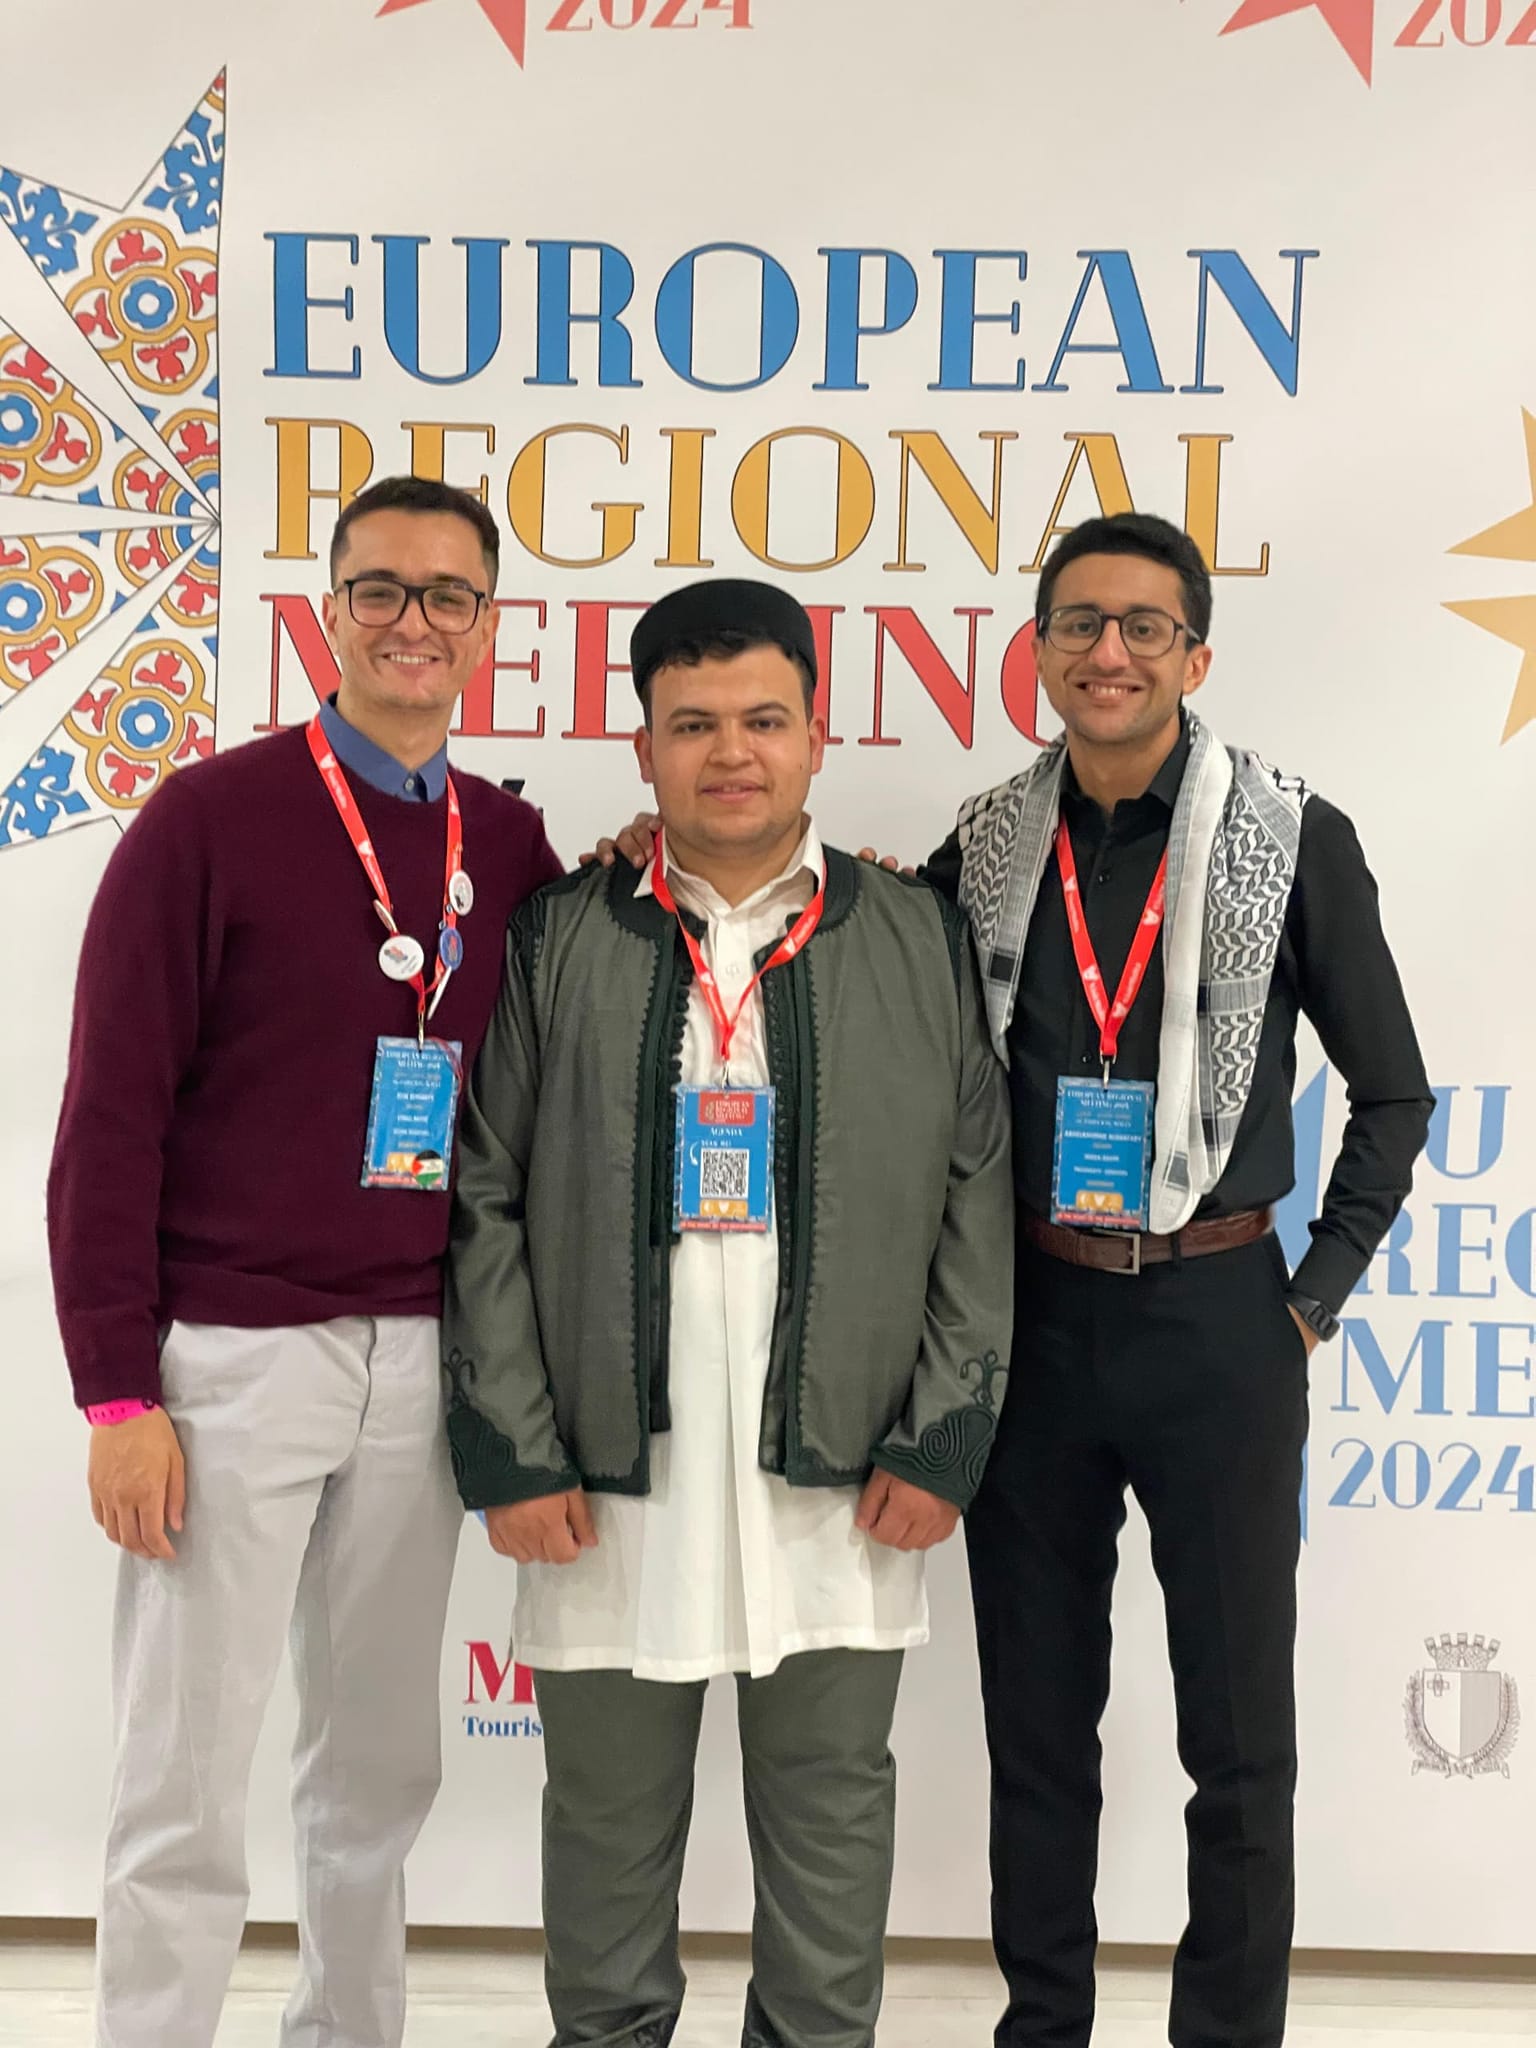 وزارة الشباب : انتخاب ليبيا عضوا فخريا في الملتقى الدولي لطلاب الطب في أوروبا المقام بدولة مالطا . 